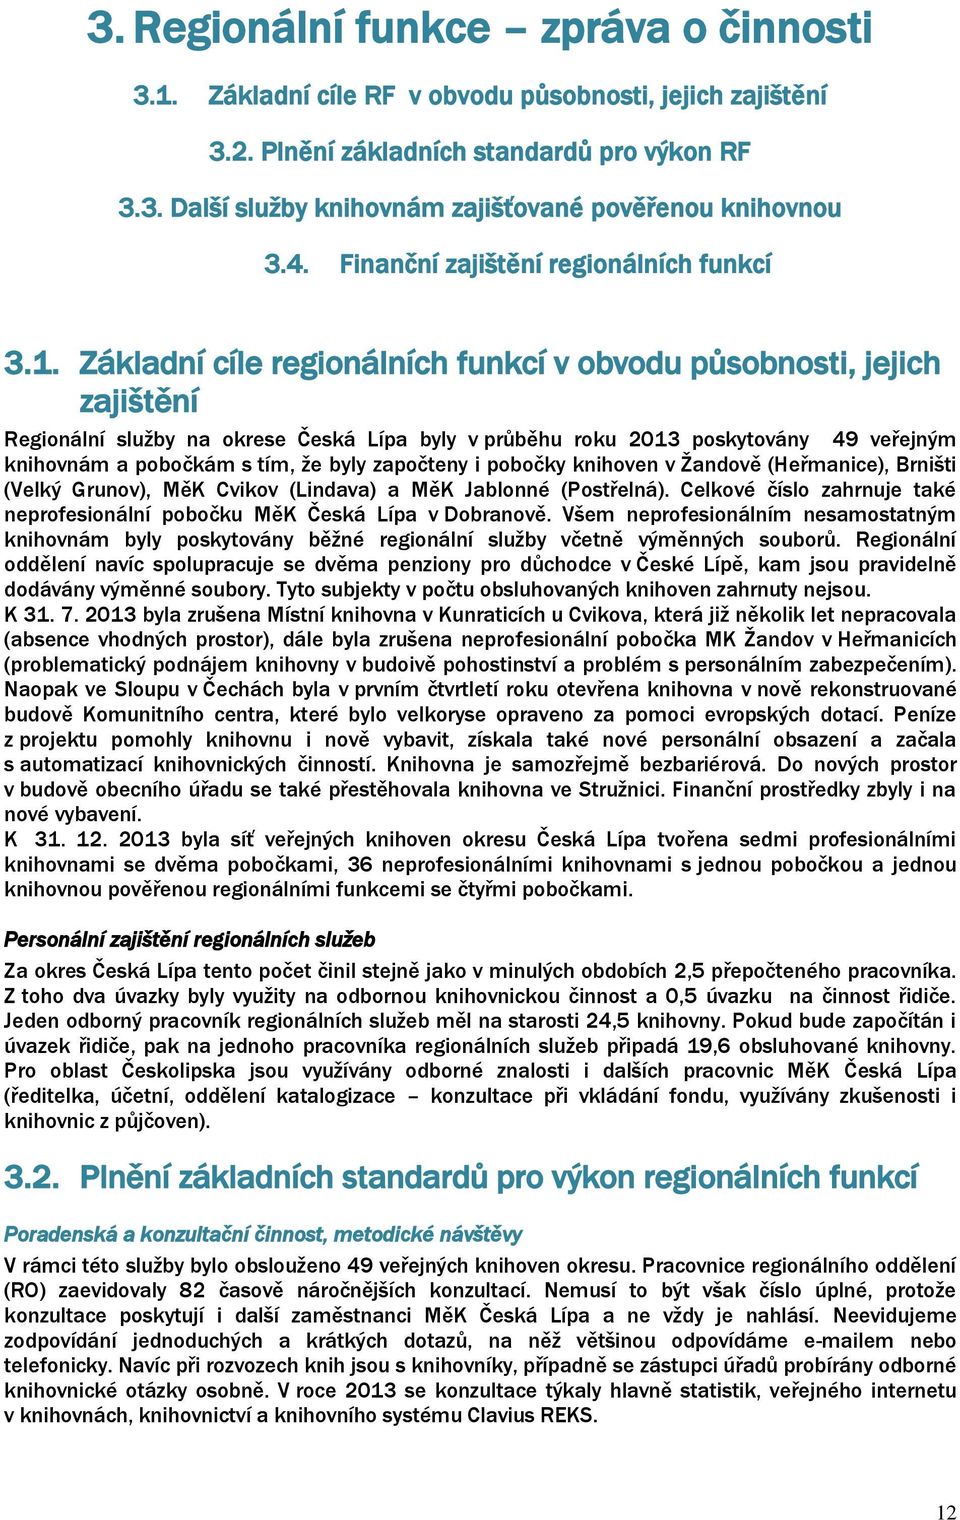 Základní cíle regionálních funkcí v obvodu působnosti, jejich zajištění Regionální služby na okrese Česká Lípa byly v průběhu roku 2013 poskytovány 49 veřejným knihovnám a pobočkám s tím, že byly